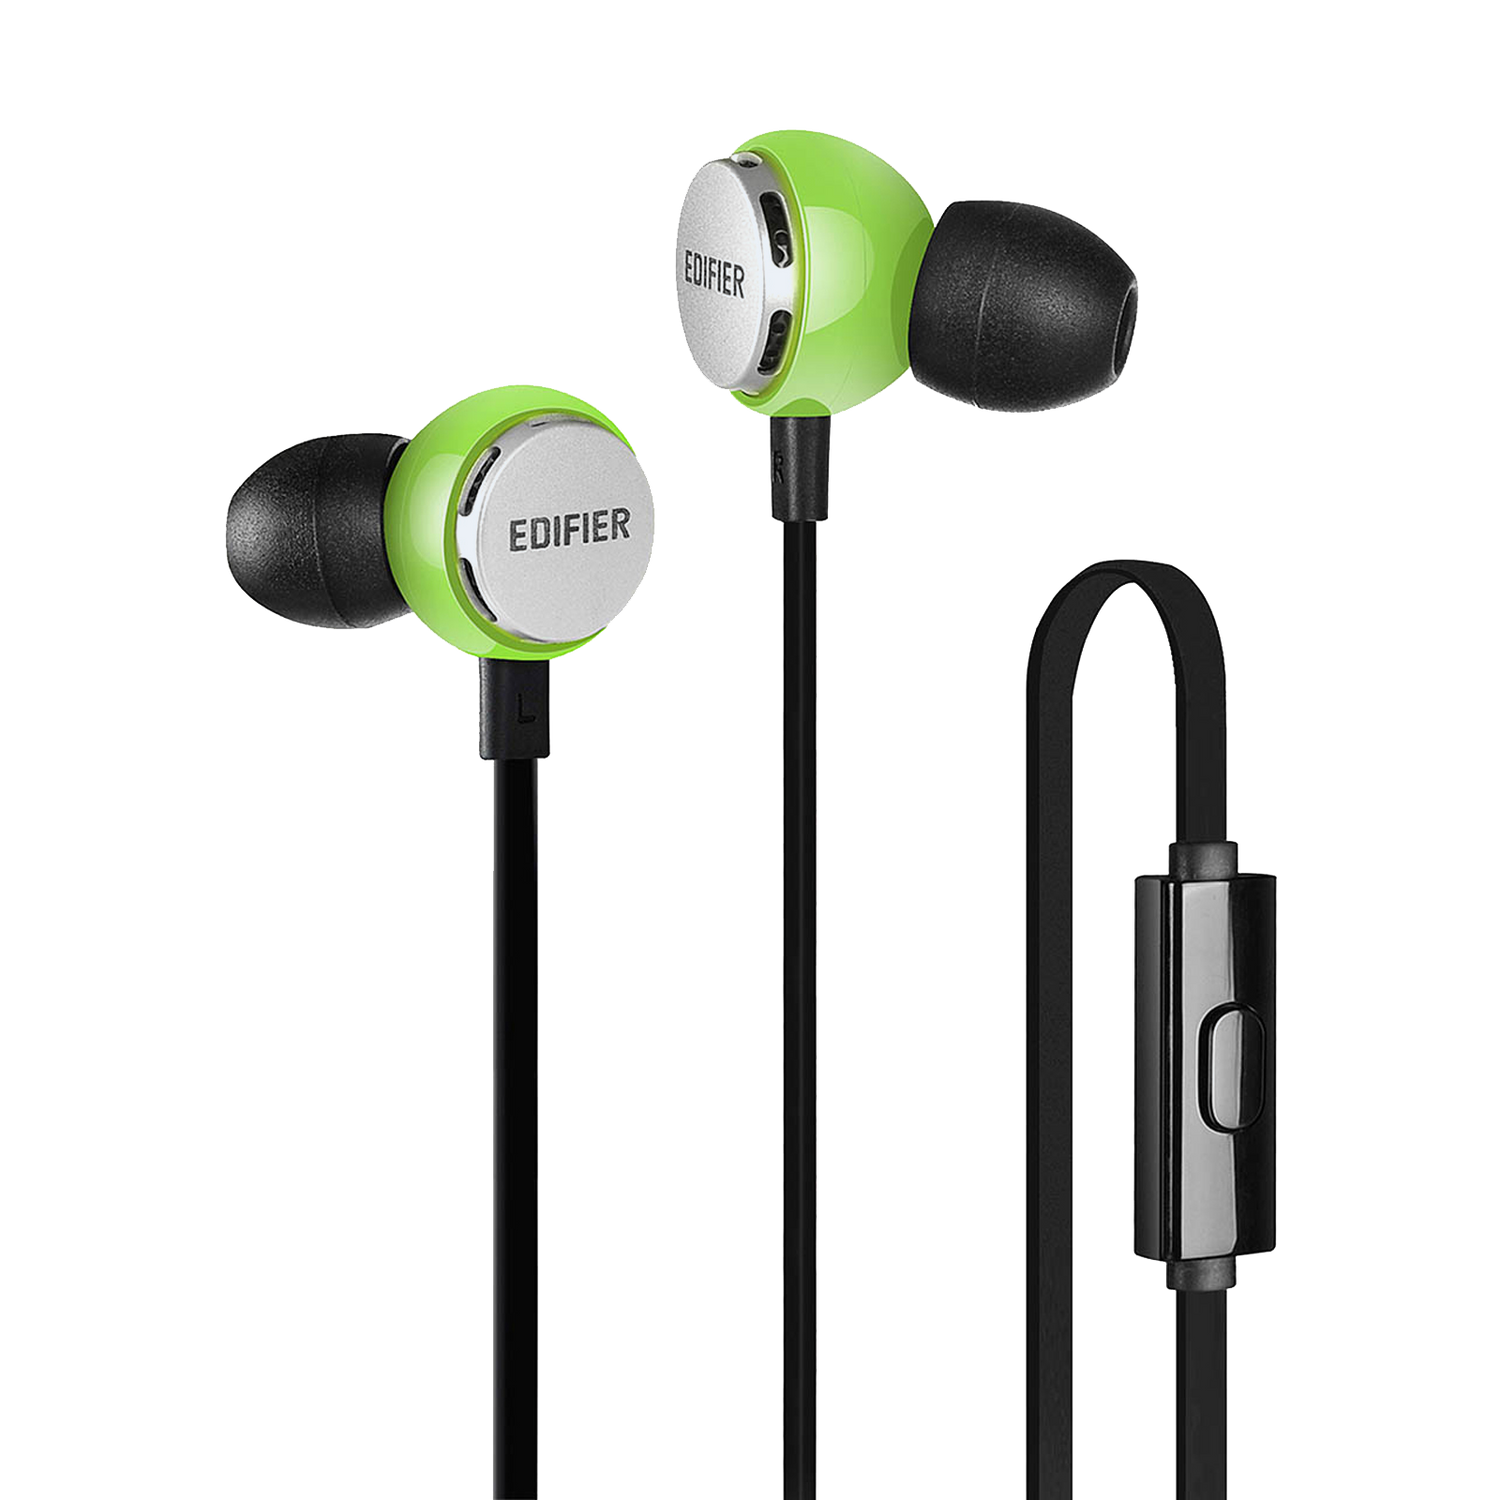 Edifier P293 入耳式电脑耳机 - IEM 耳内监听耳塞式耳机带麦克风和遥控器的手机耳机适用于 iPhone、Android、三星、HTC、LG 智能手机 - 白色